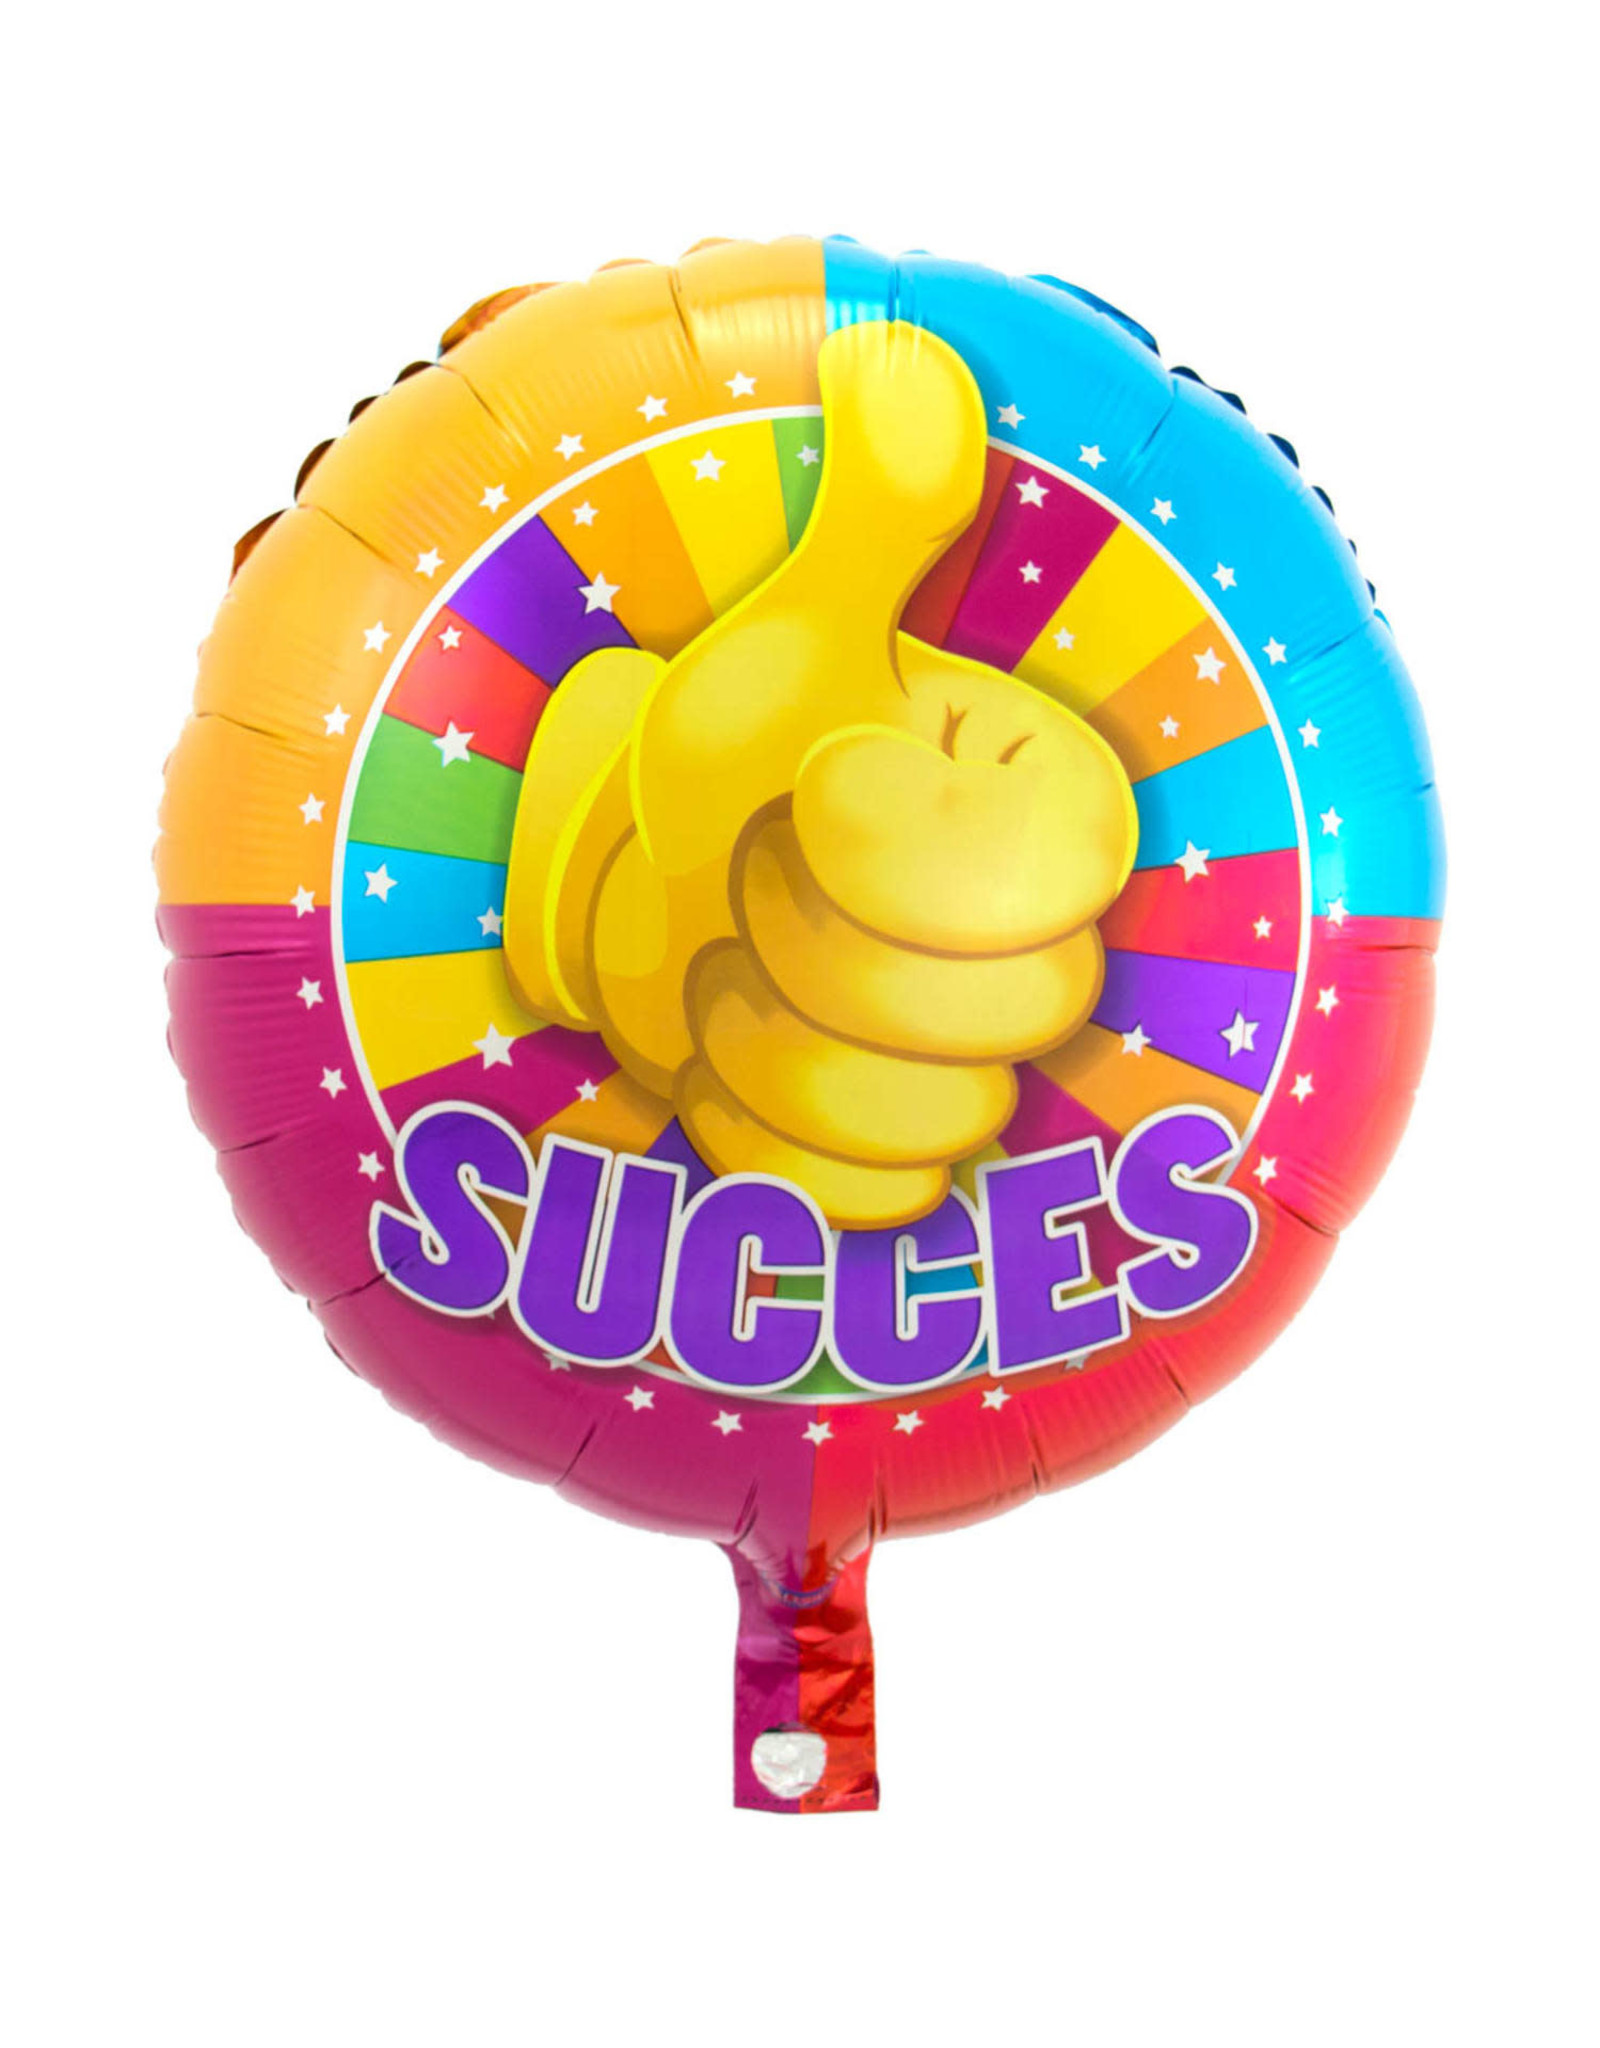 "Succes" Folie Ballon